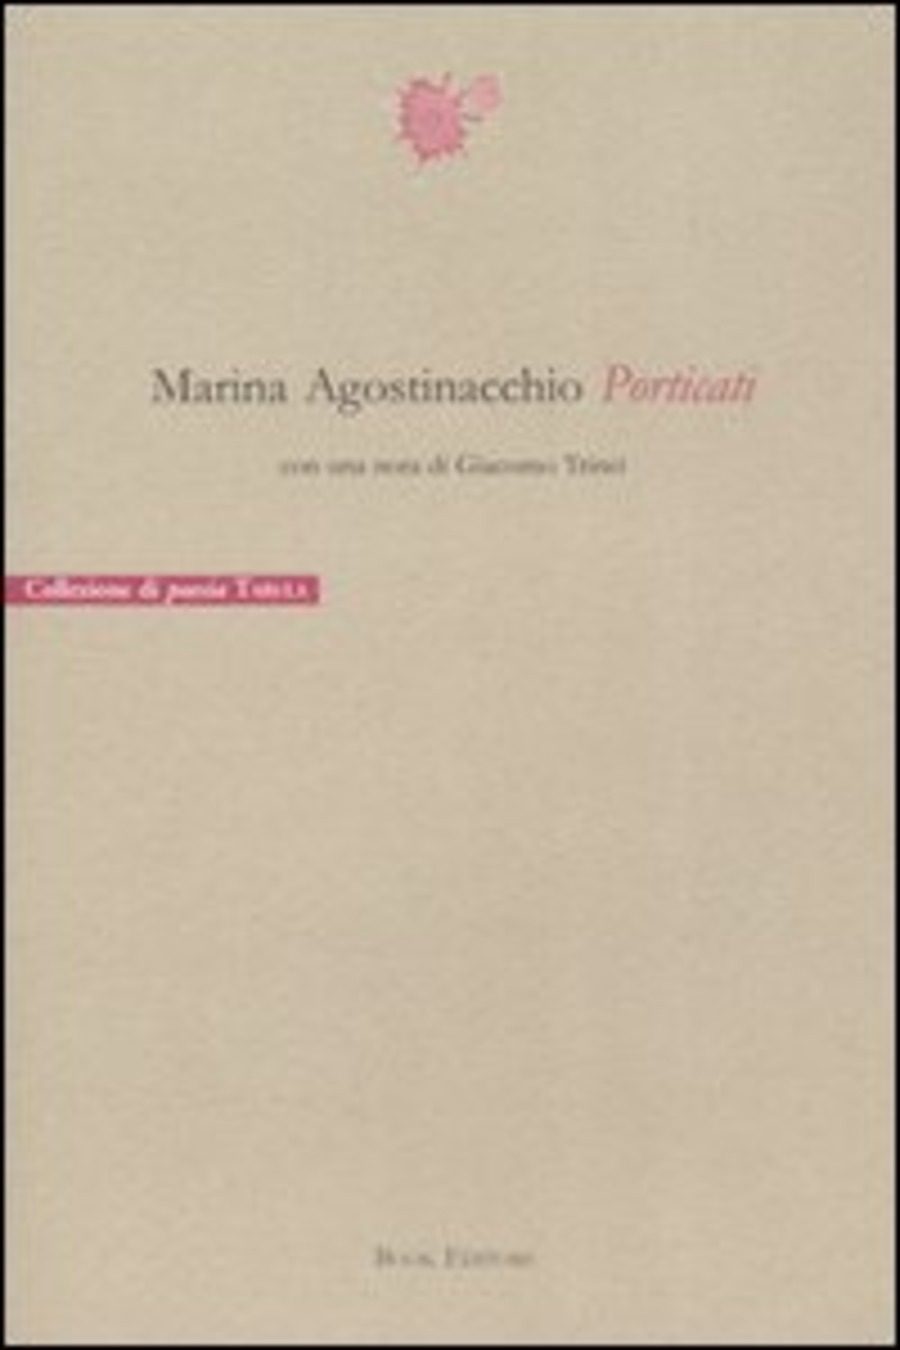 Porticati (1999-2004)